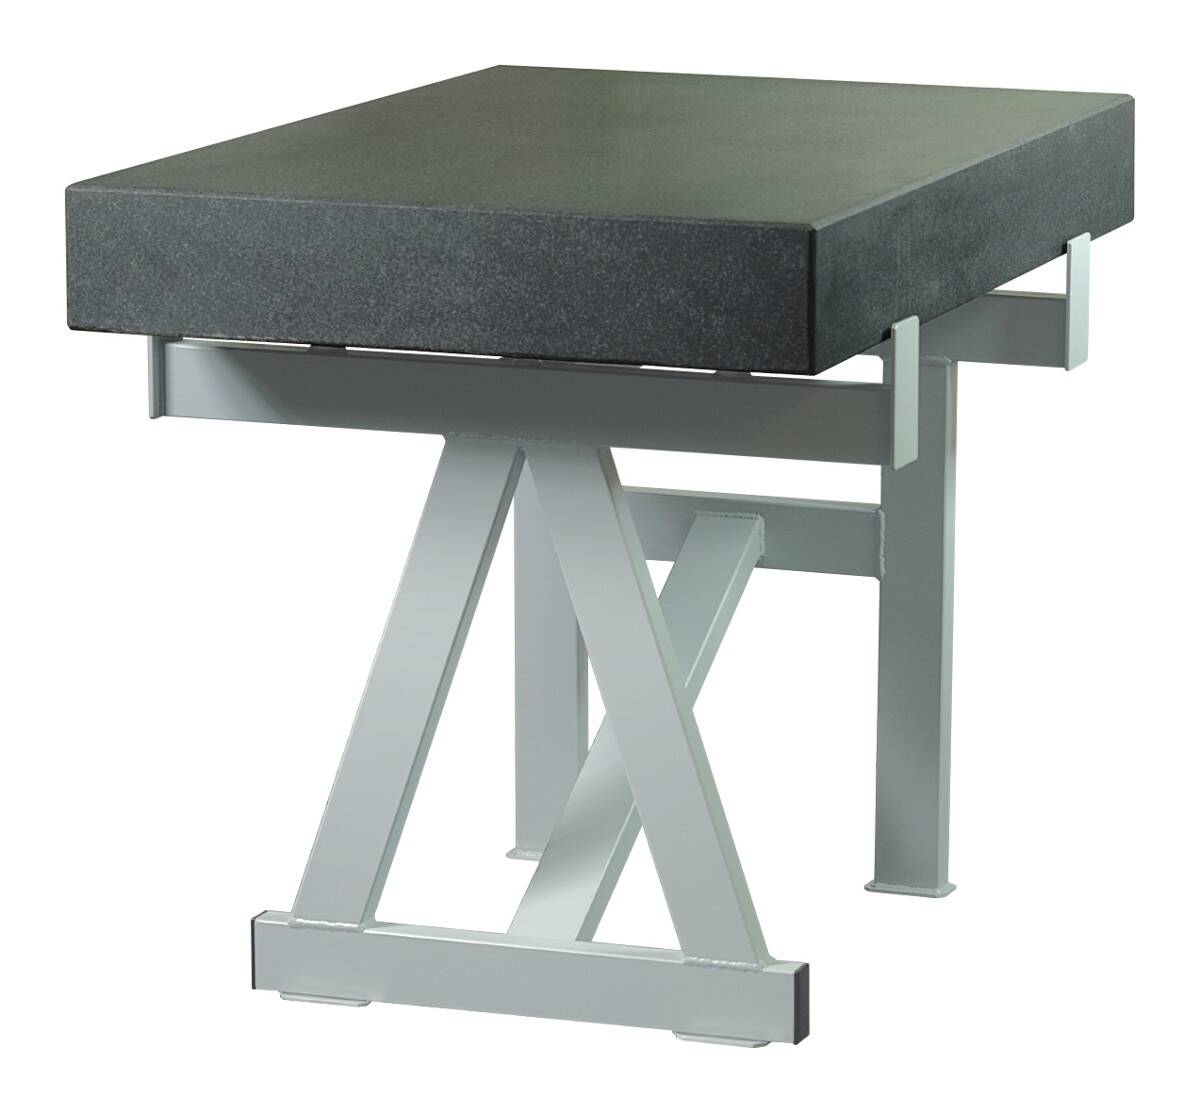 SCHUT stół do płyty pomiarowej 630x630x80mm 131.020